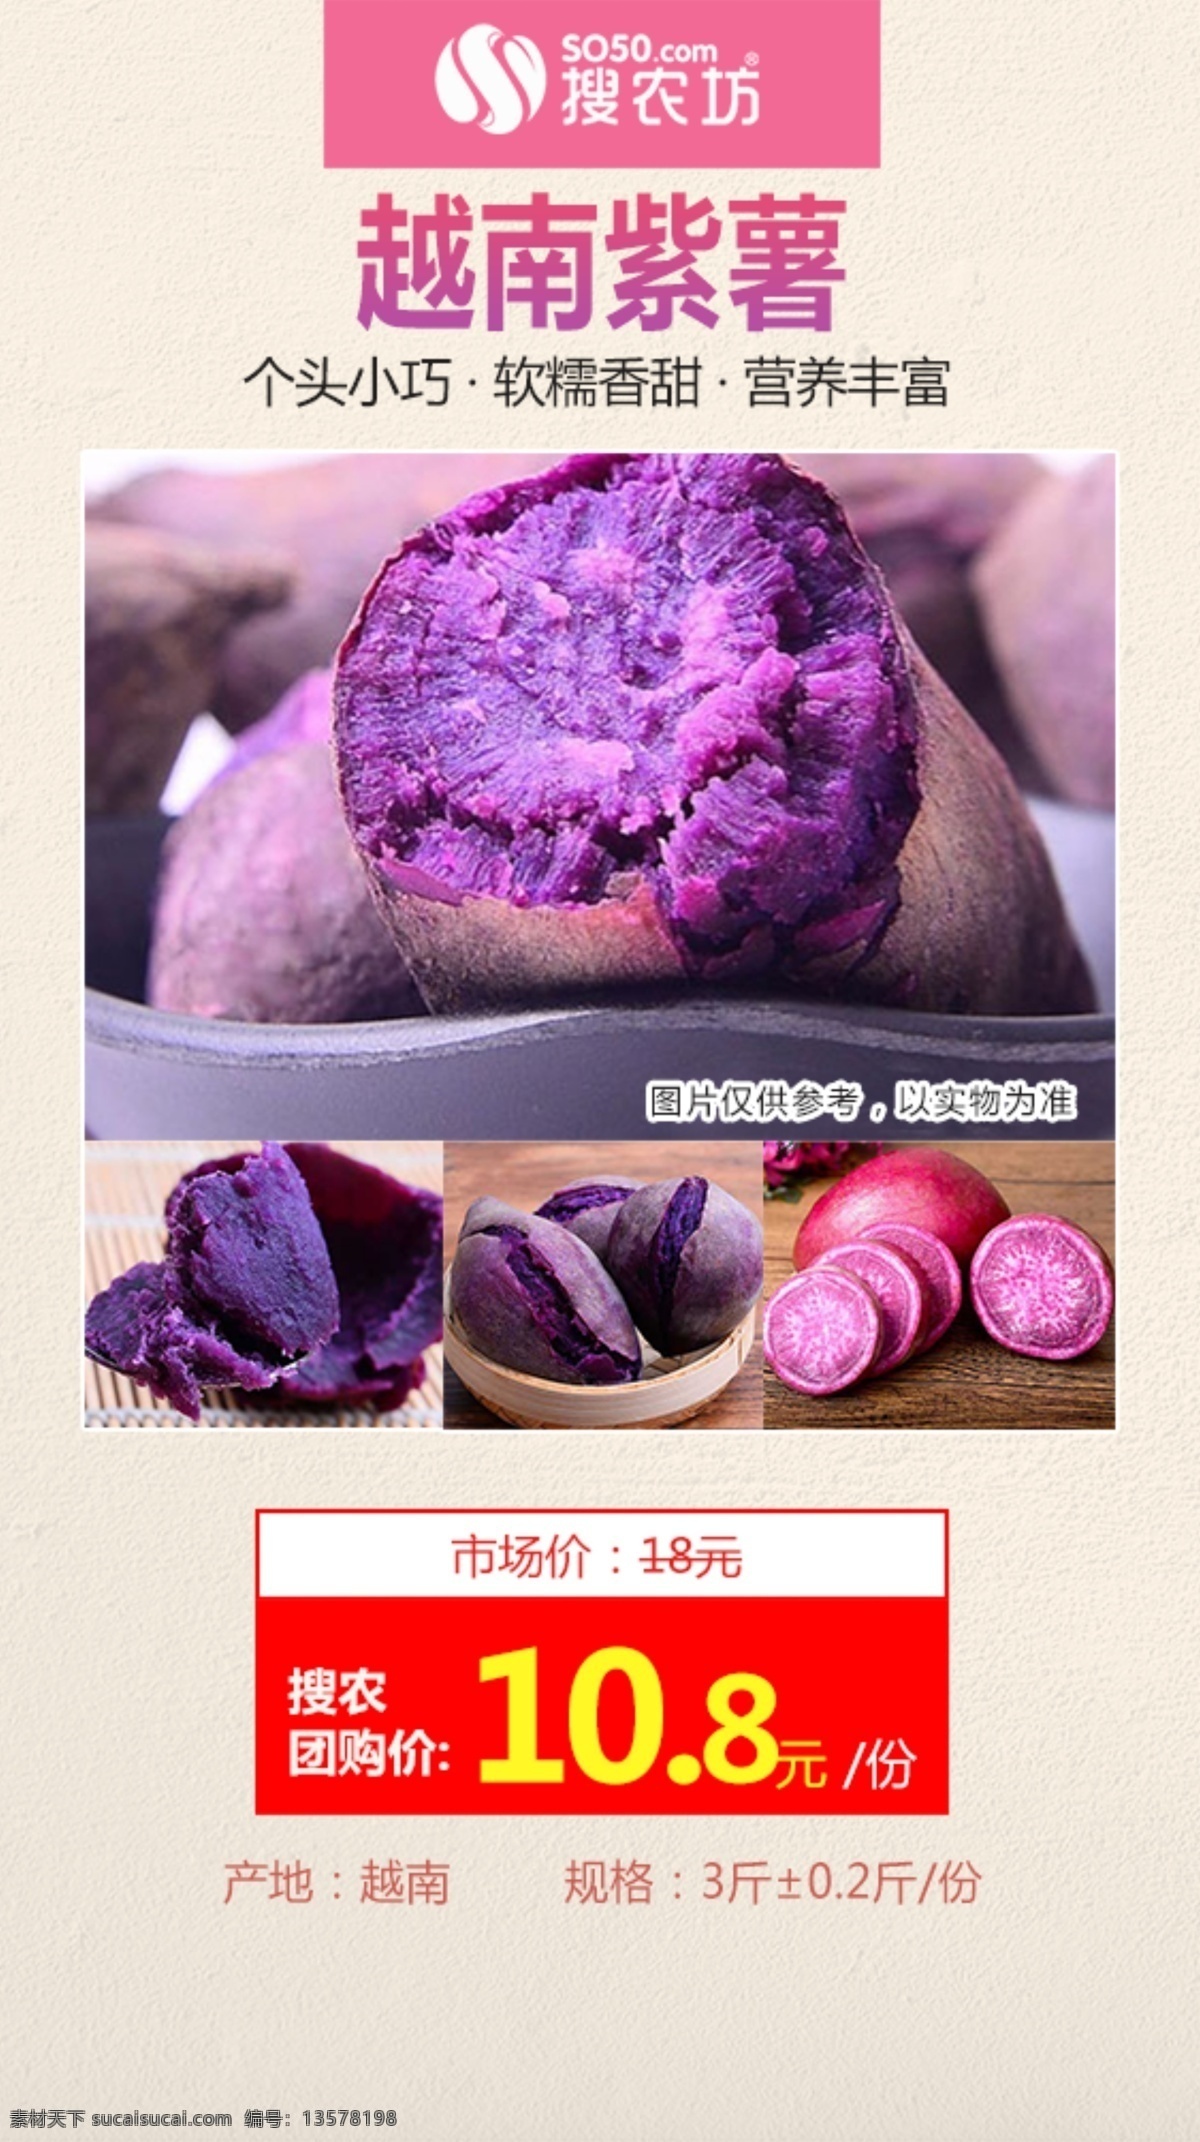 越南紫薯海报 越南紫薯 海报 海报图 社区团购 电商 秒杀模板 产品 秒 杀 相关 图